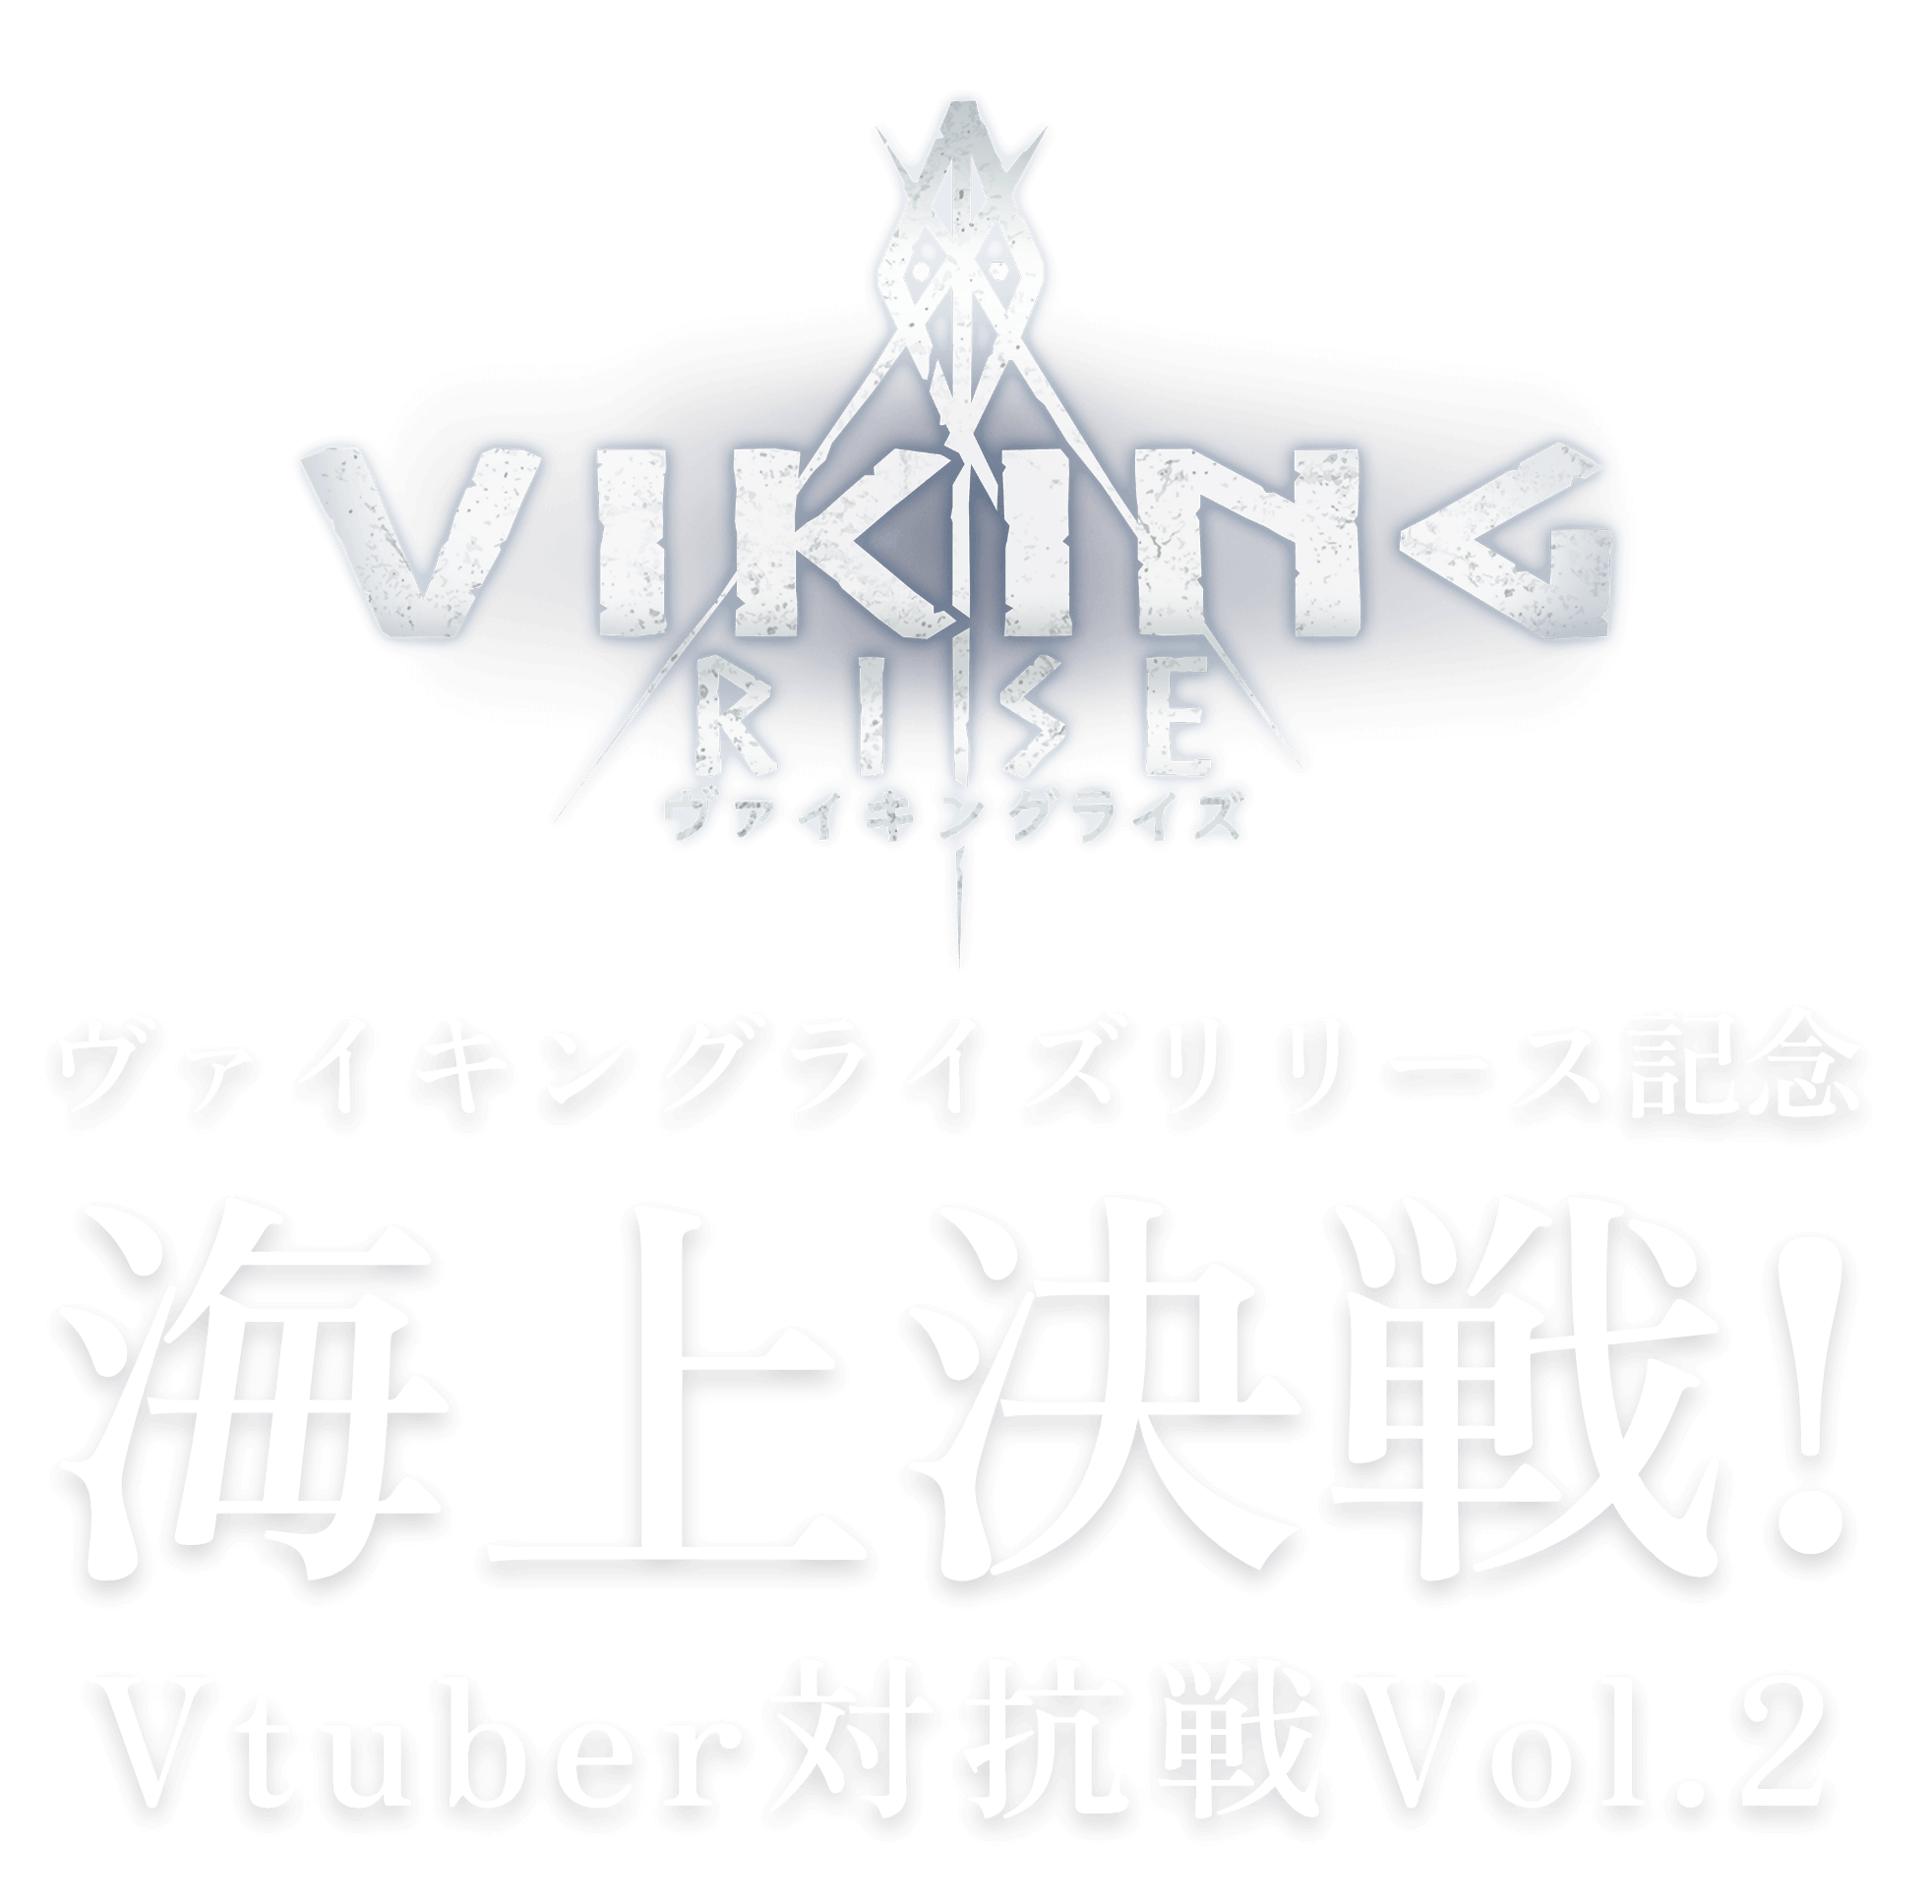 VIKING RISE ロゴ